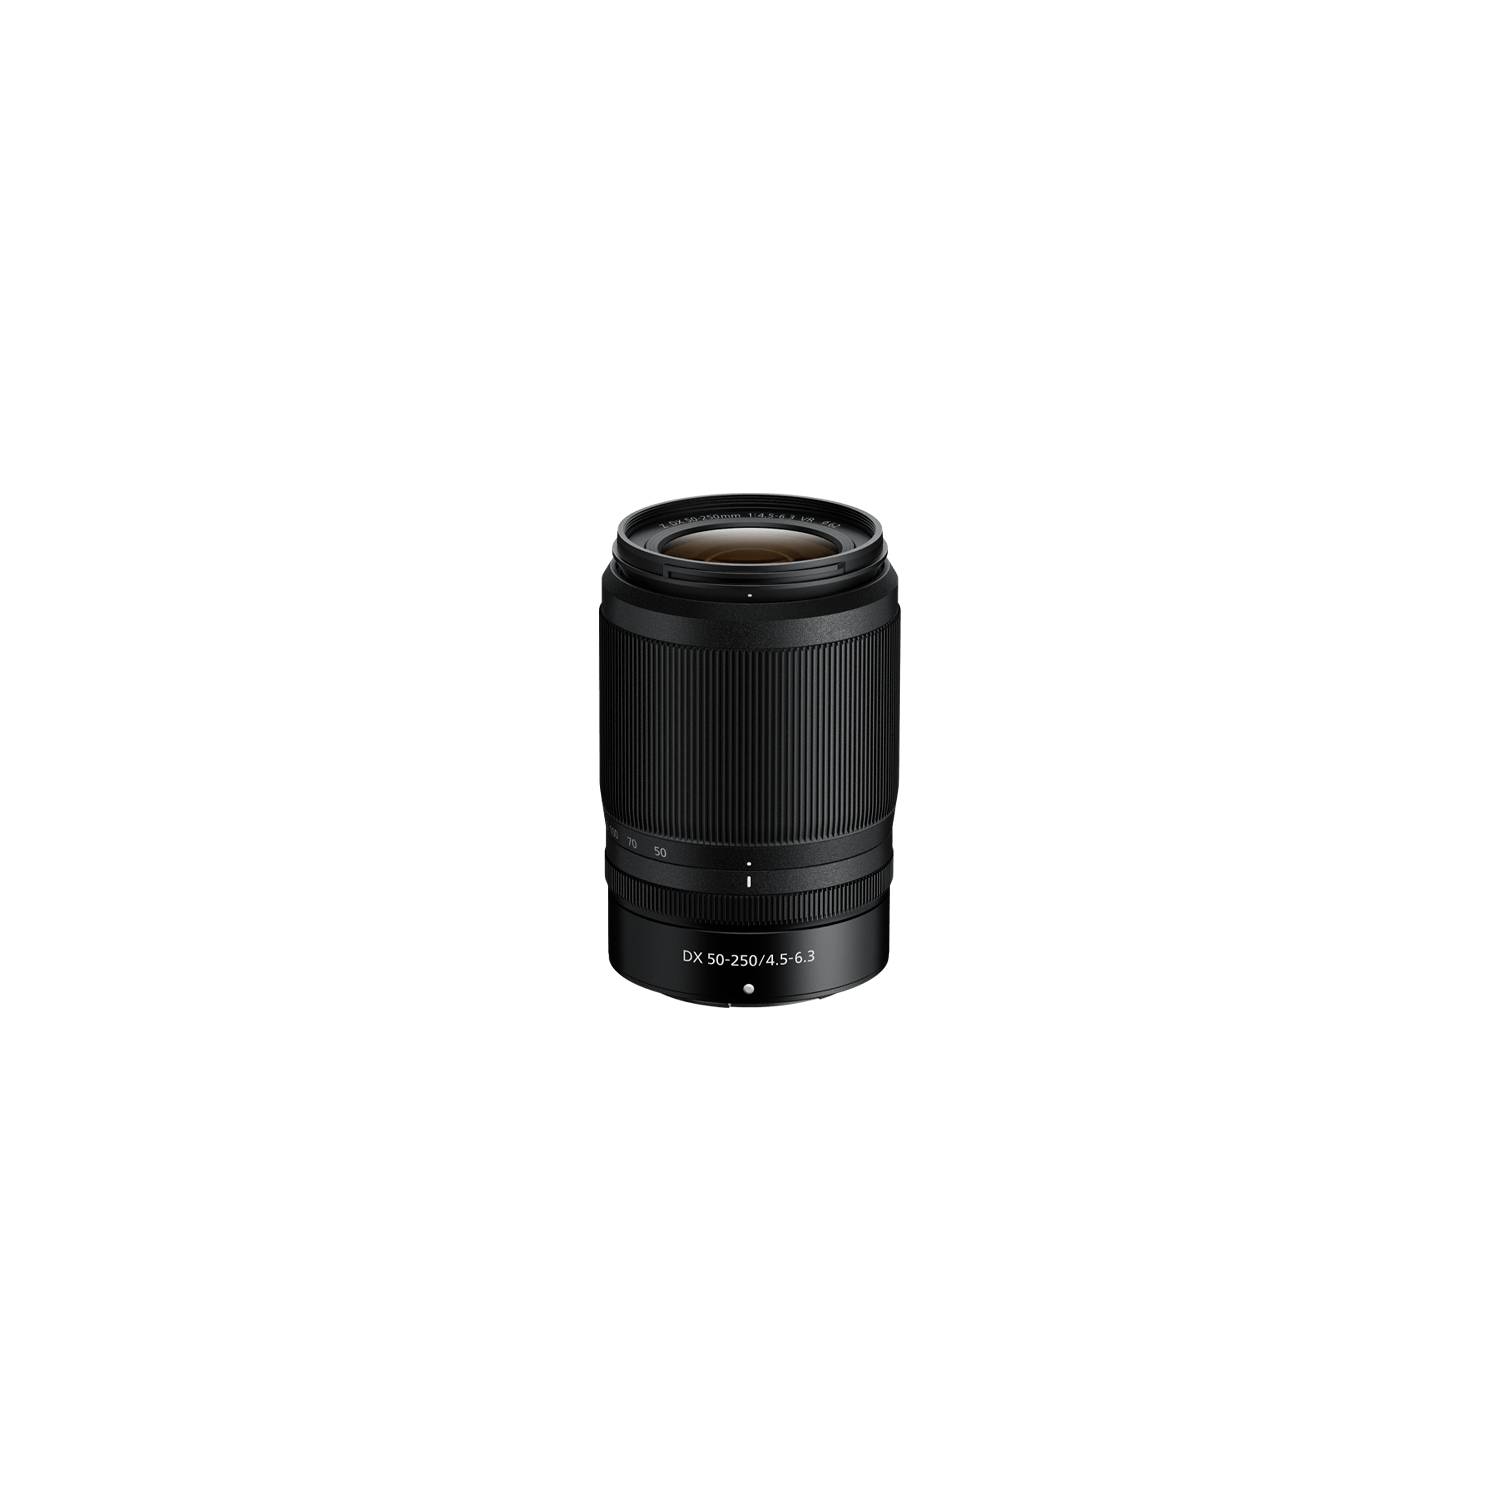 未使用品】Nikon Z DX 50-250mm f4.5-6.3 VR - カメラ